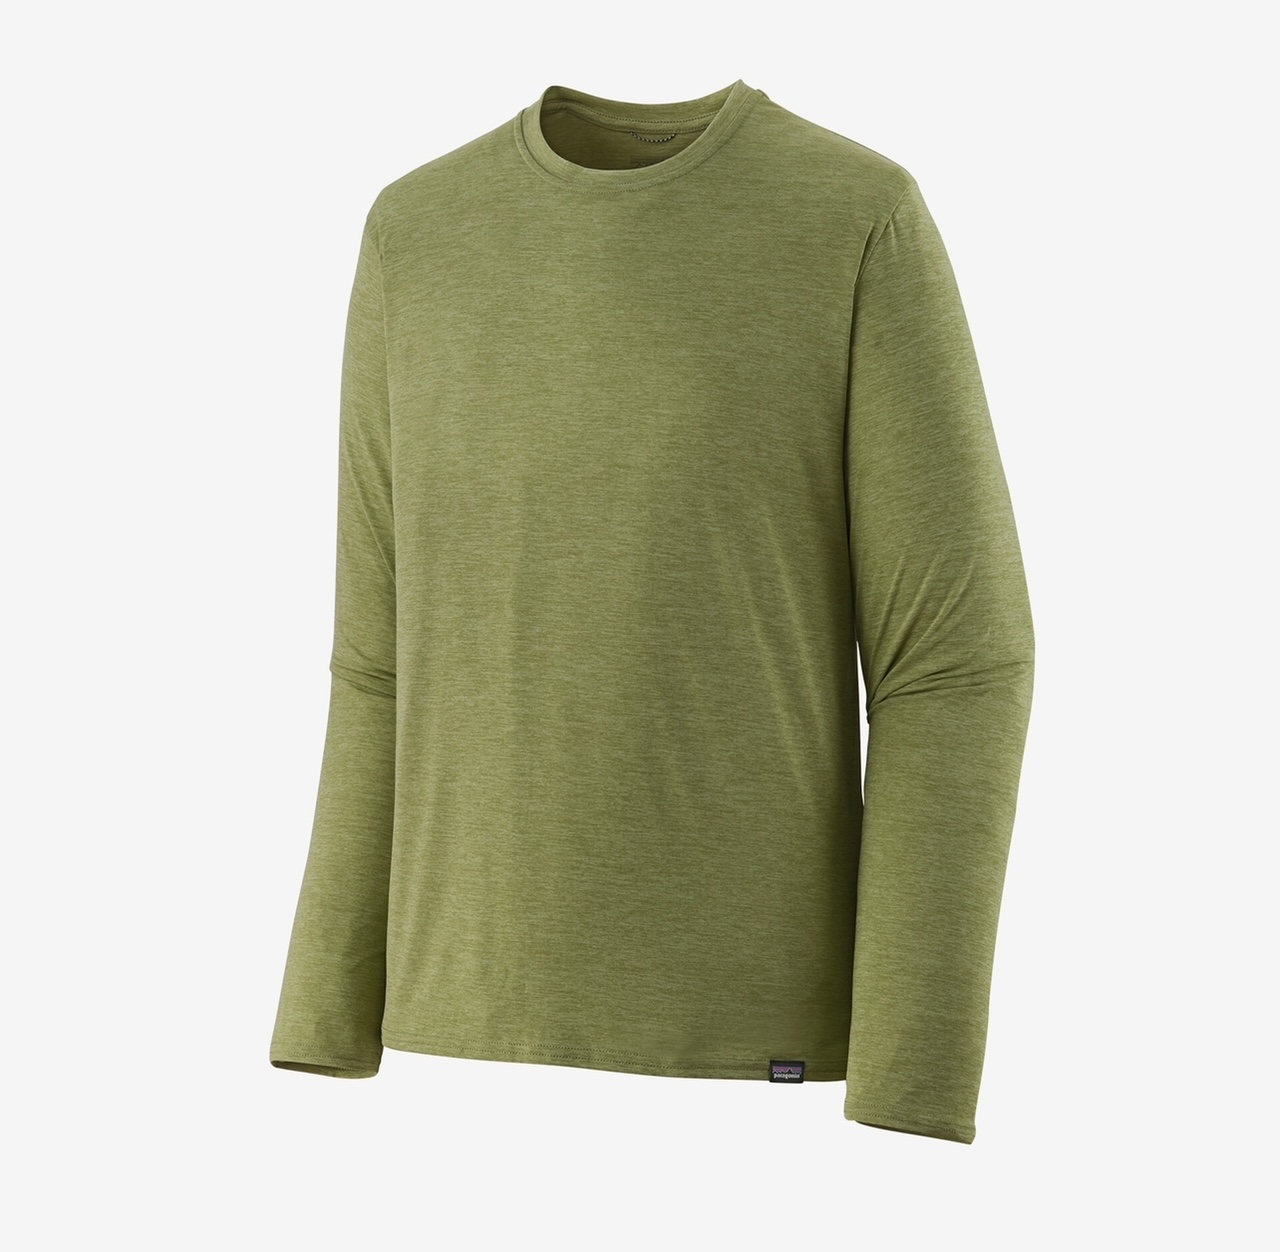 Patagonia M's L/S Capilene Cool Daily Shirt - Buckhorn Green: Light Buckhorn Green X-Dye - Small